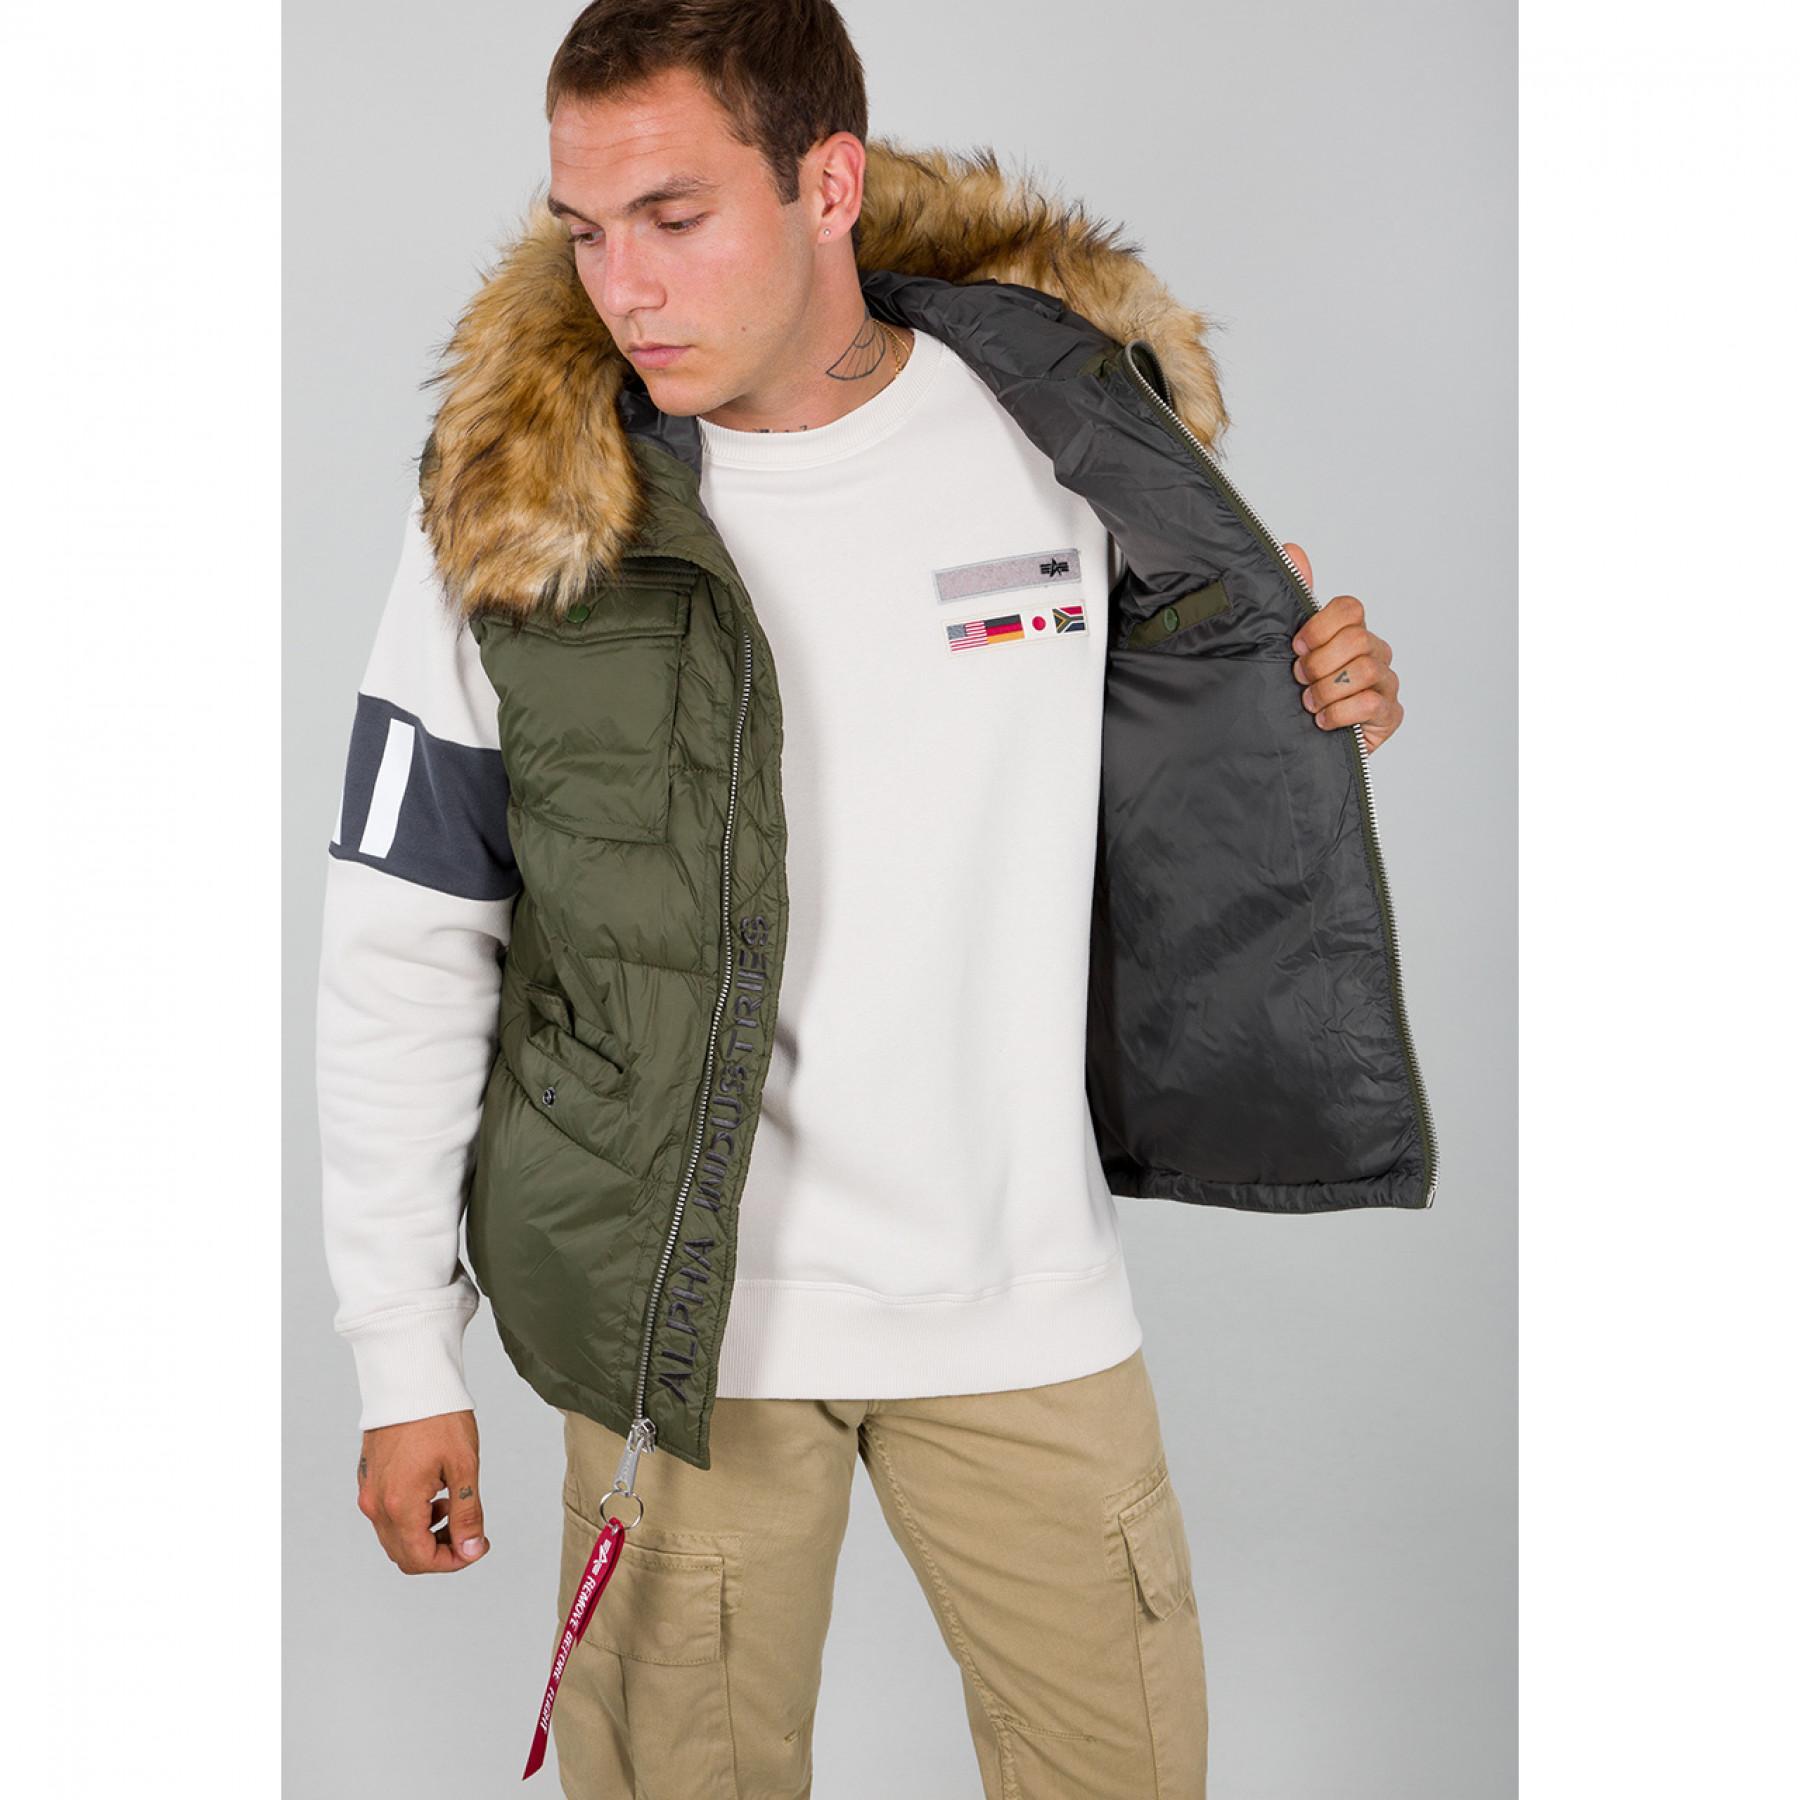 Hooded jacket Alpha Industries Field Vest FD